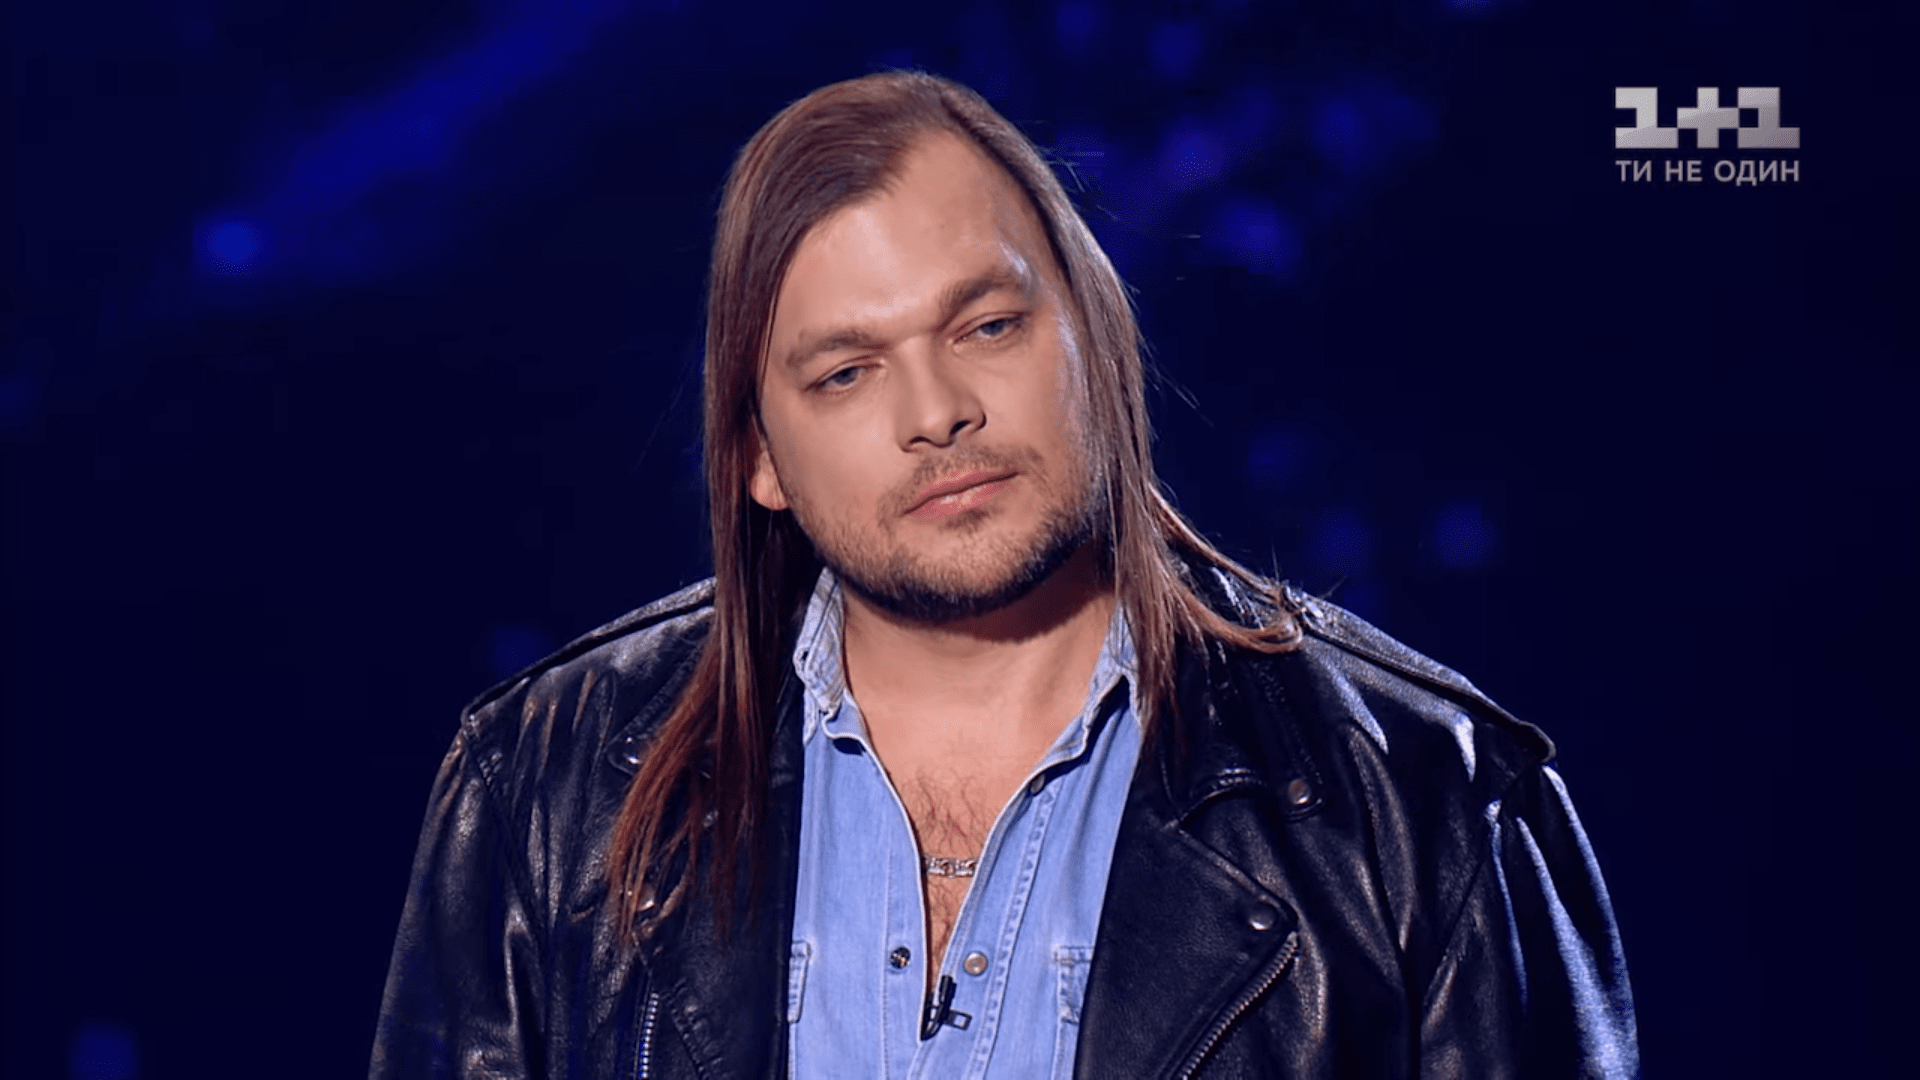 Байкер из Запорожья покинул шоу «Голос країни» после вокальной схватки с экс-финансистом  - ВИДЕО